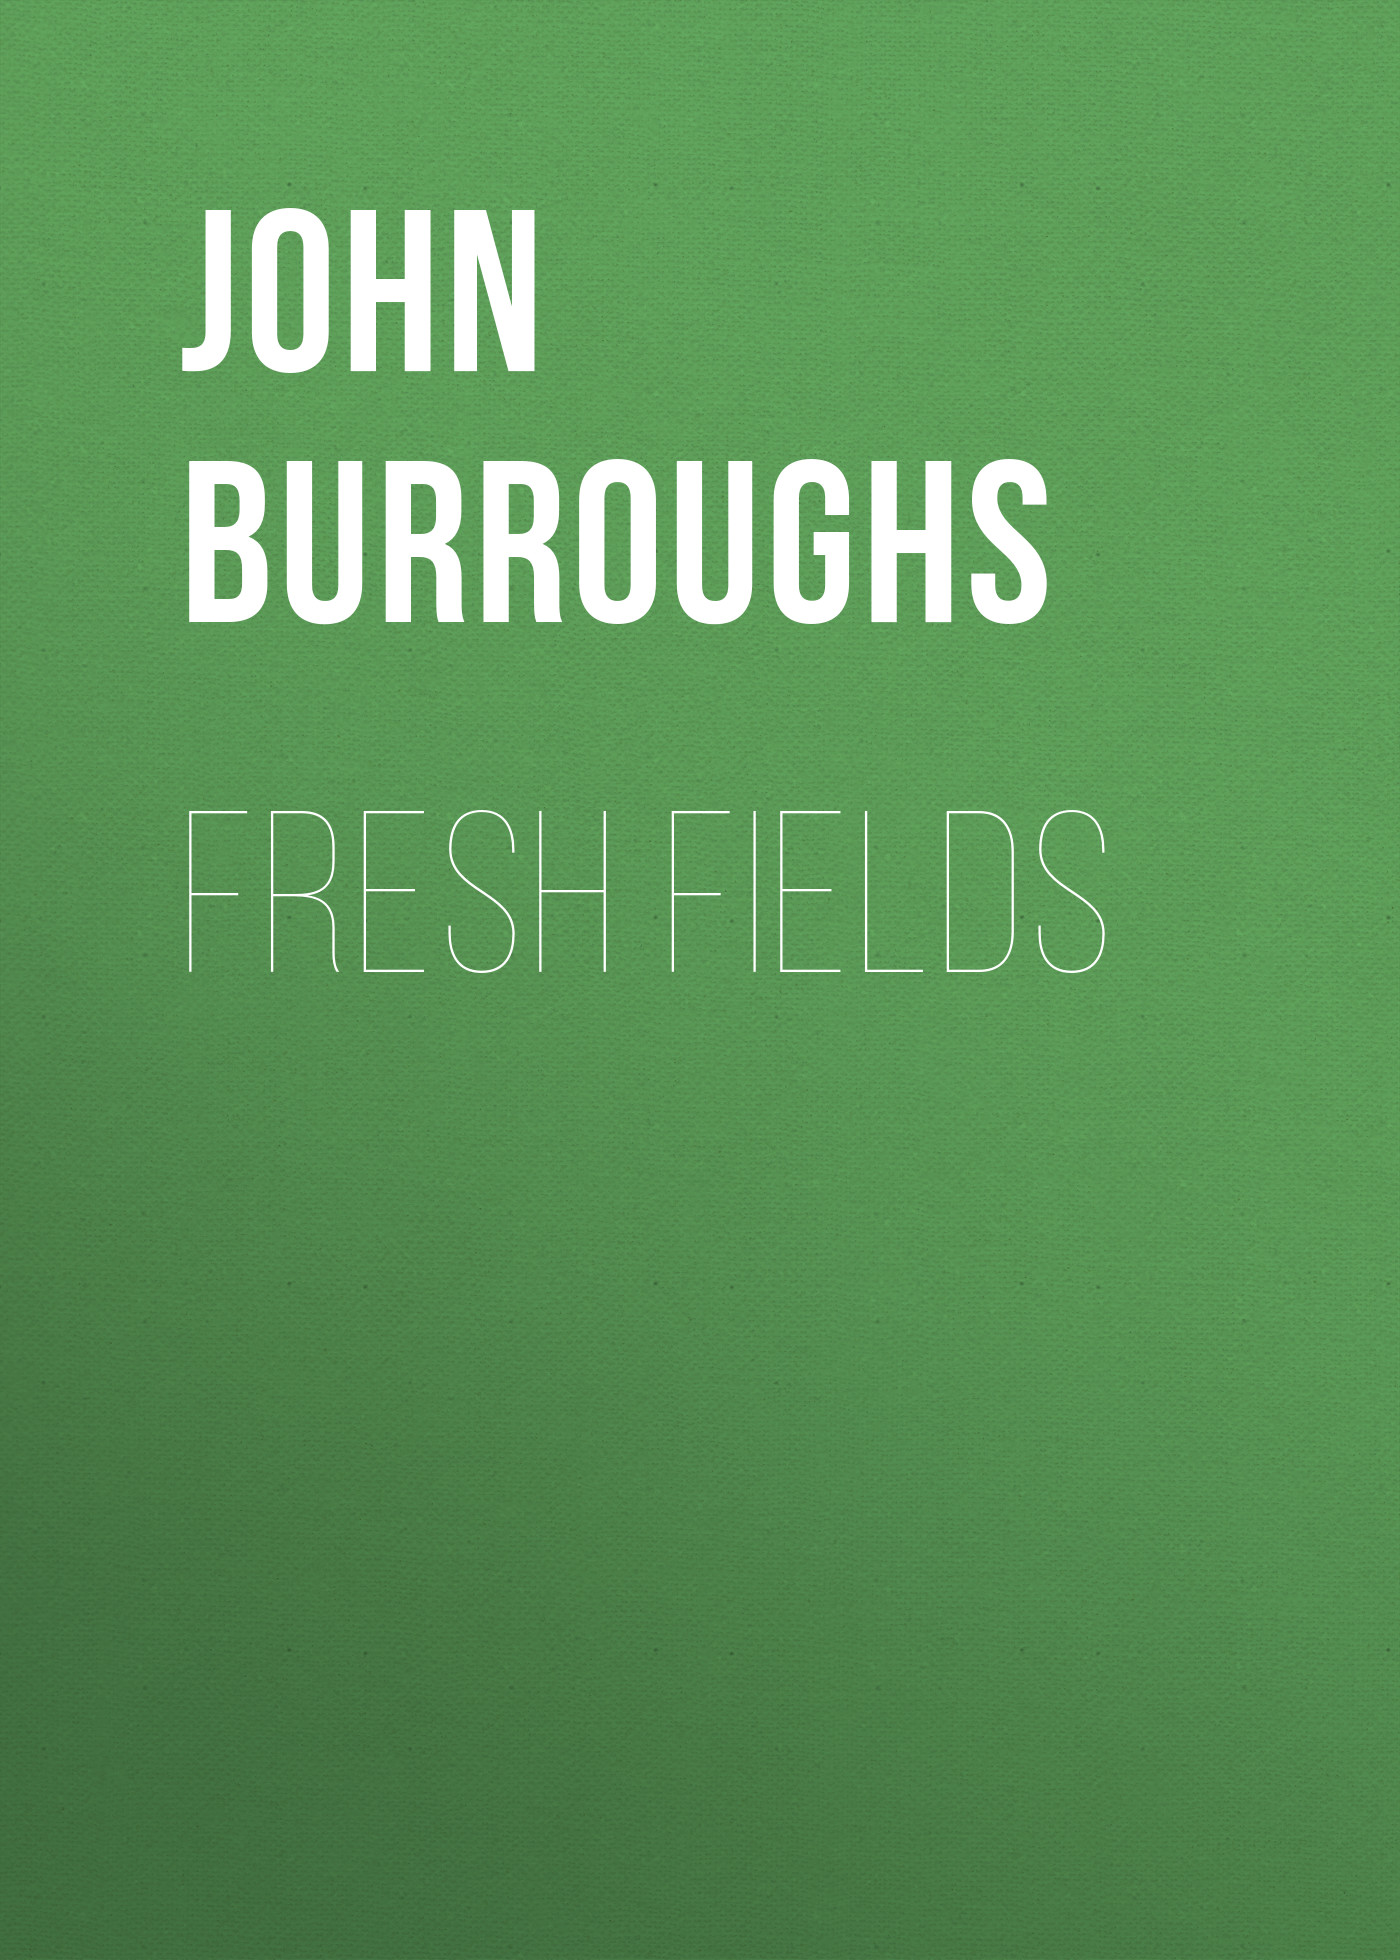 Книга Fresh Fields из серии , созданная John Burroughs, может относится к жанру Зарубежная старинная литература, Зарубежная классика, Историческая литература. Стоимость электронной книги Fresh Fields с идентификатором 24173972 составляет 0 руб.